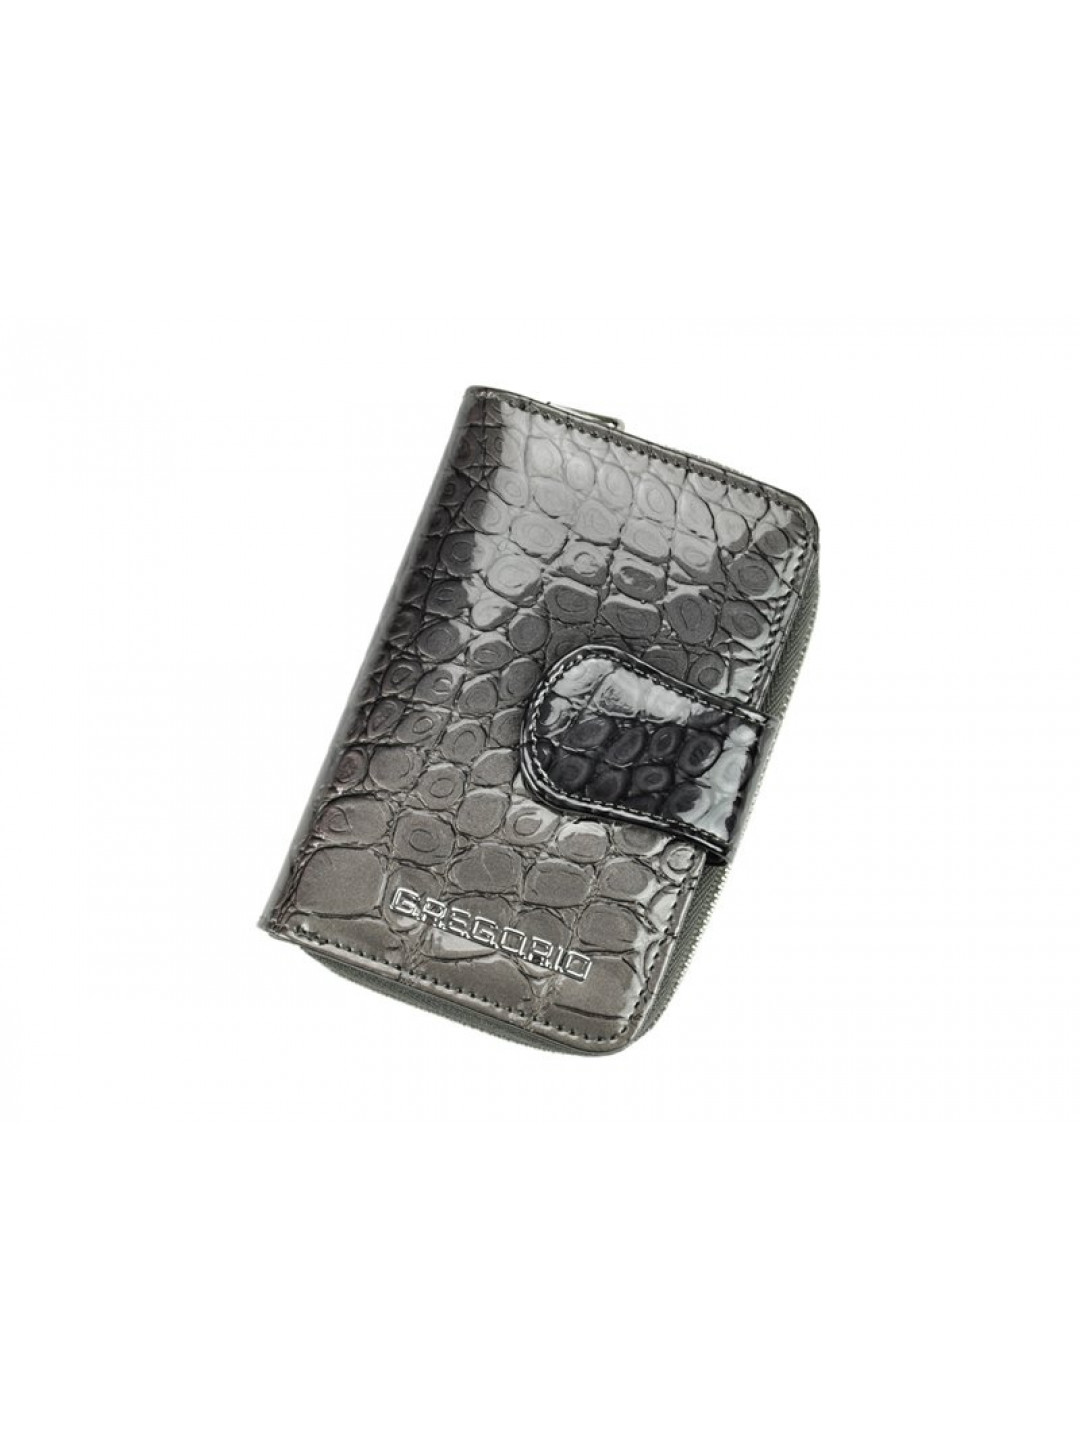 Luxusní dámská kožená peněženka Elegant croco grey šedá